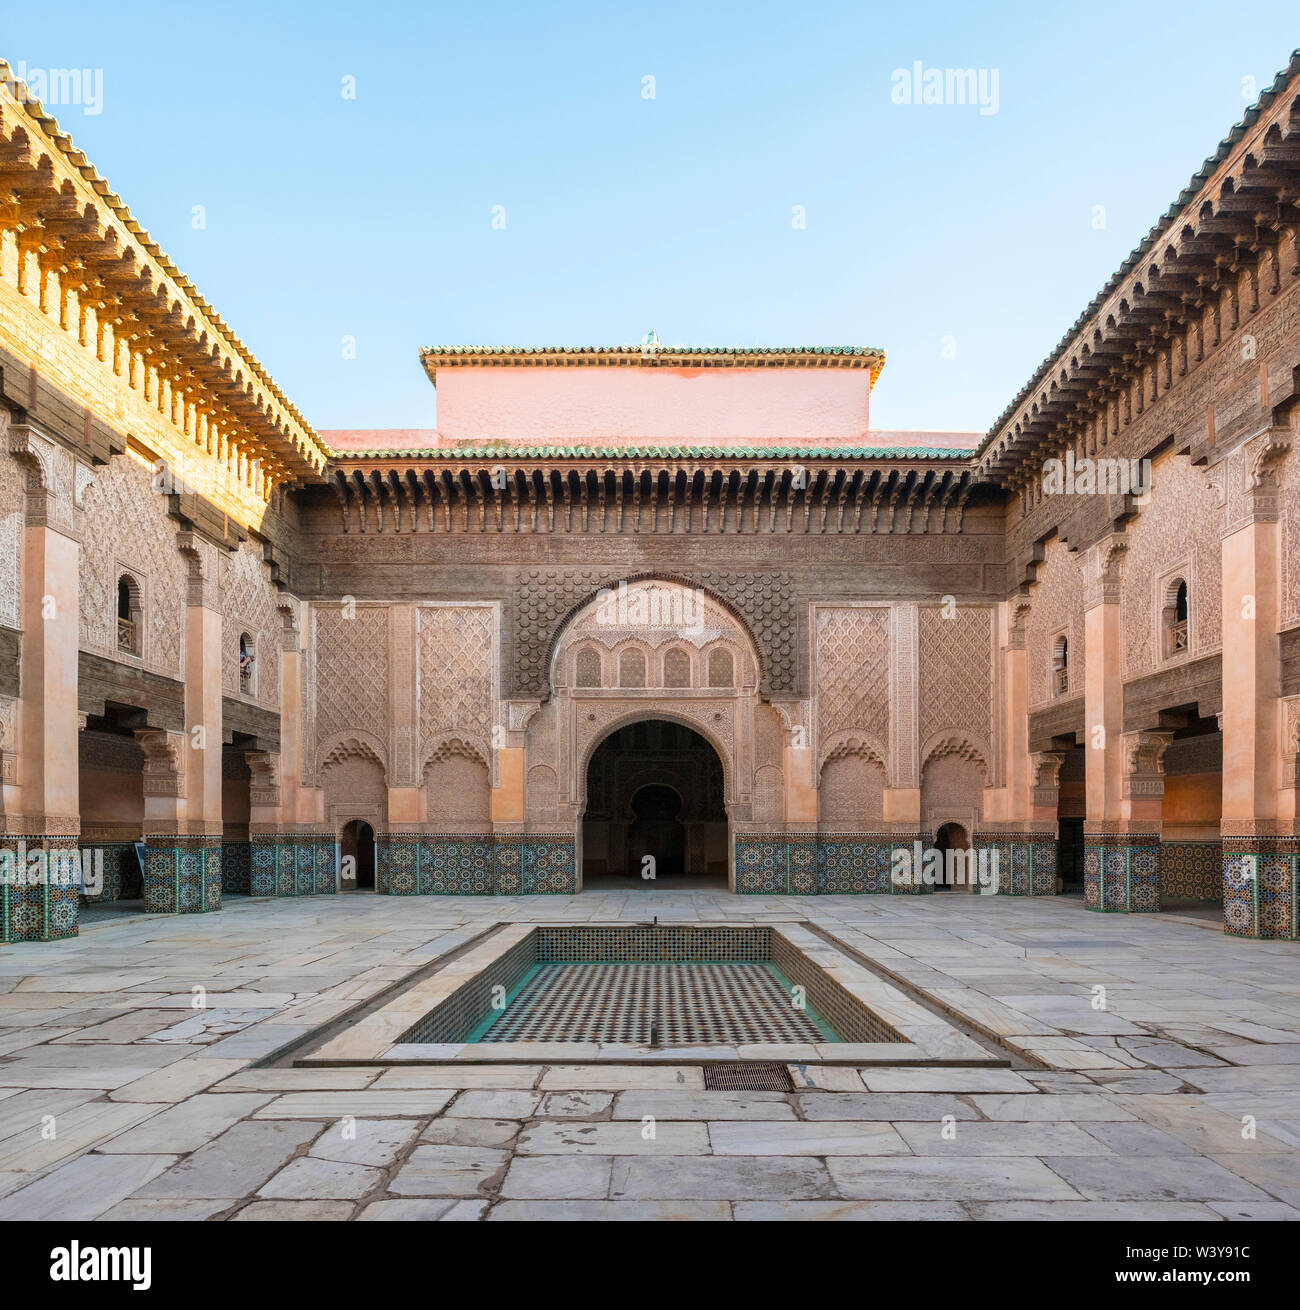 Le Maroc, Marrakech-Safi Marrakesh-Tensift-El Haouz (région), Marrakech. Cour intérieure de la Medersa Ben Youssef, 16e siècle Collège islamique. Banque D'Images